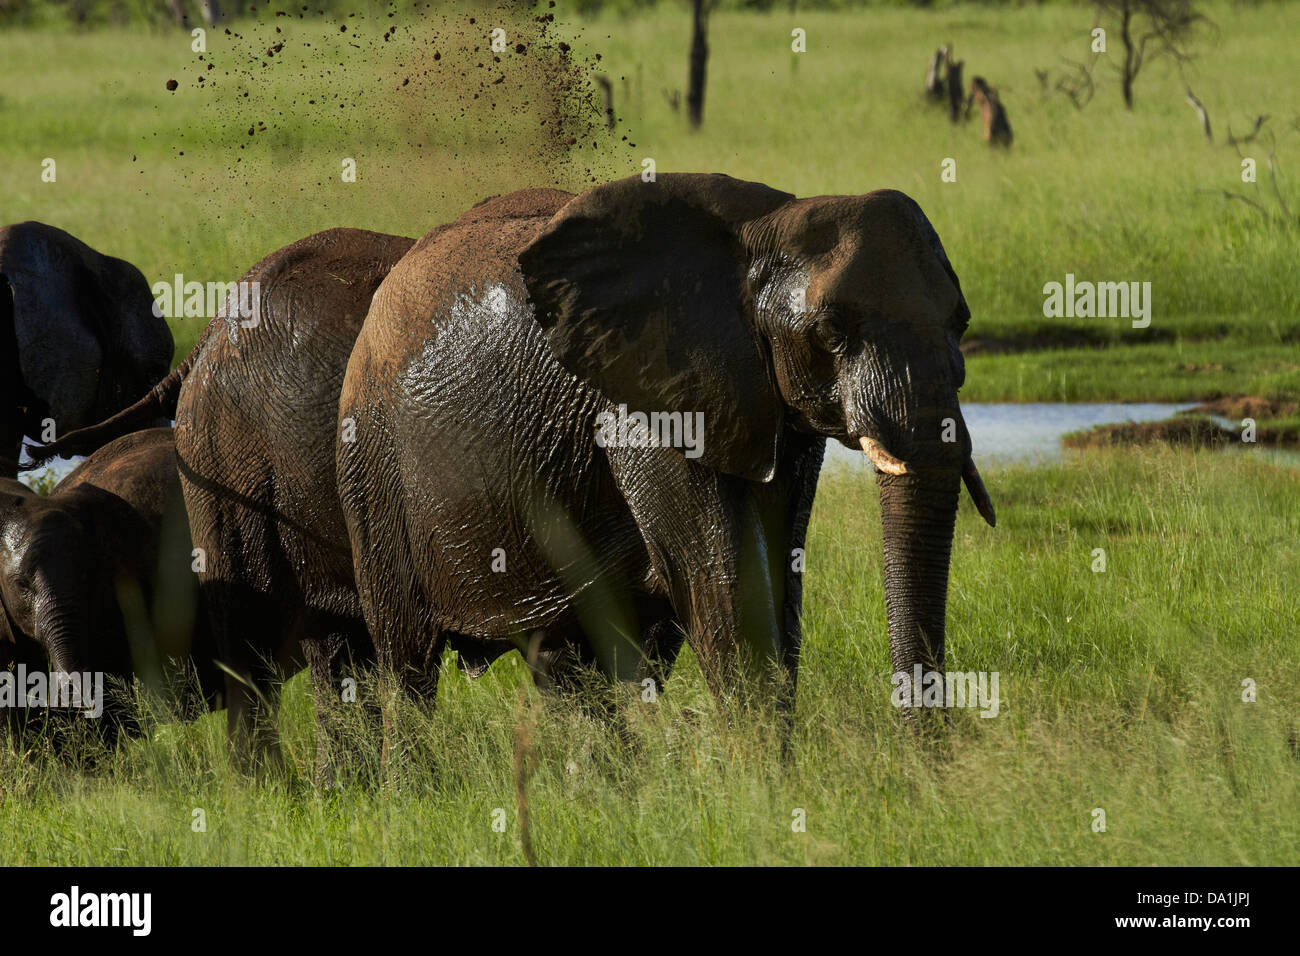 El elefante (Loxodonta africana) con baños de barro, el Parque Nacional de Hwange, Zimbabwe, África austral Foto de stock